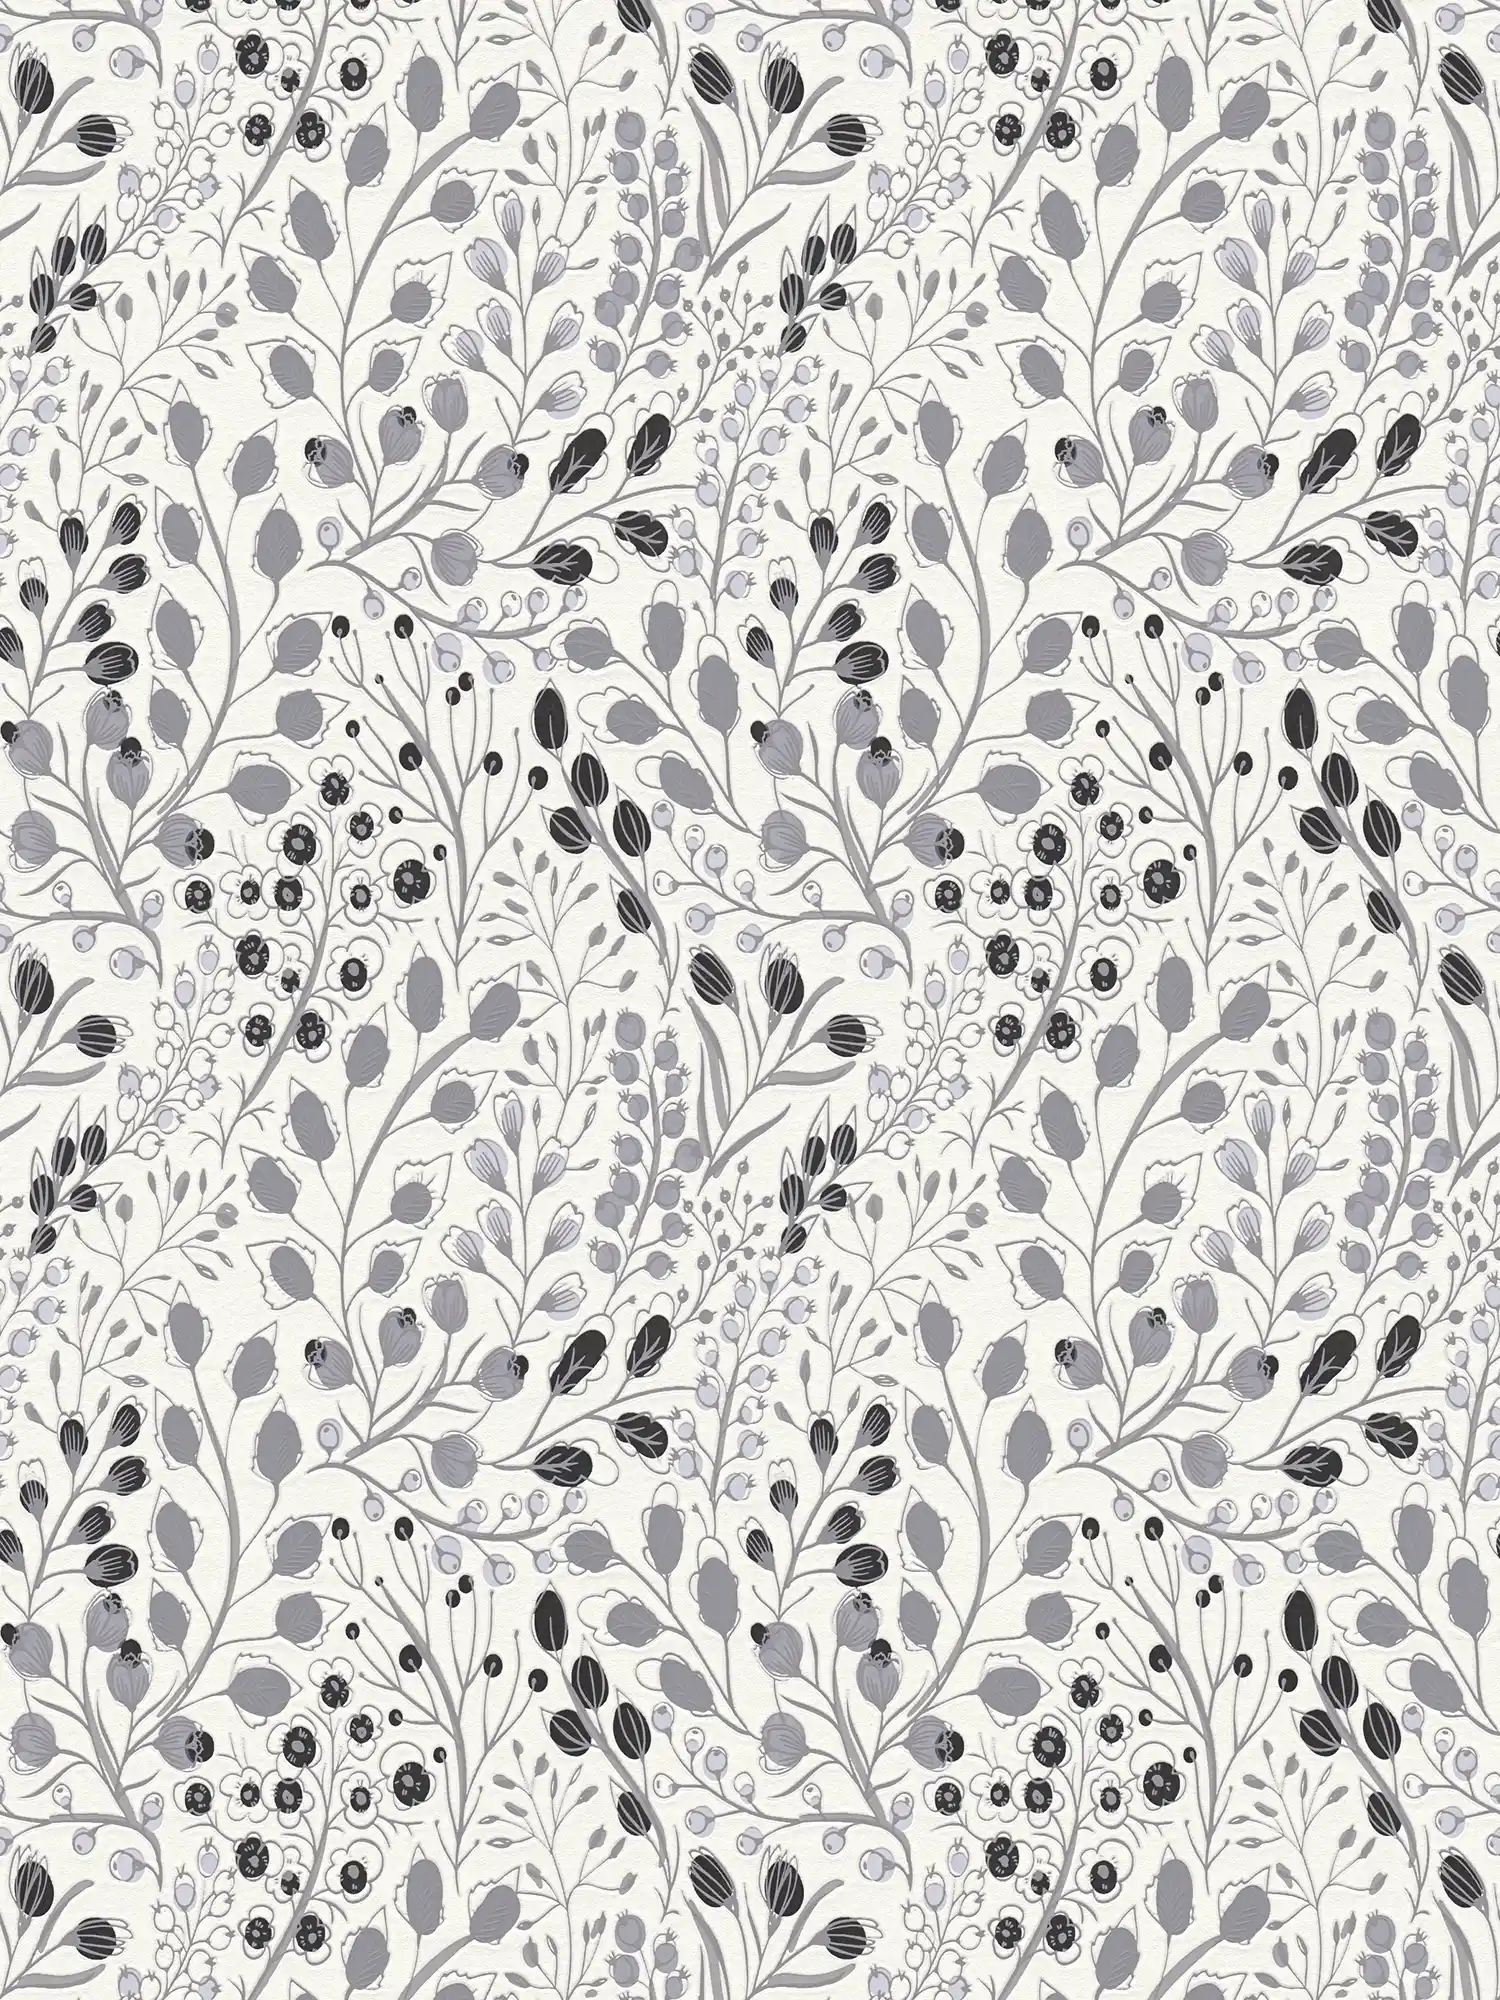 Abstract bloemenbehang in tekenstijl mat - grijs, wit, zwart
